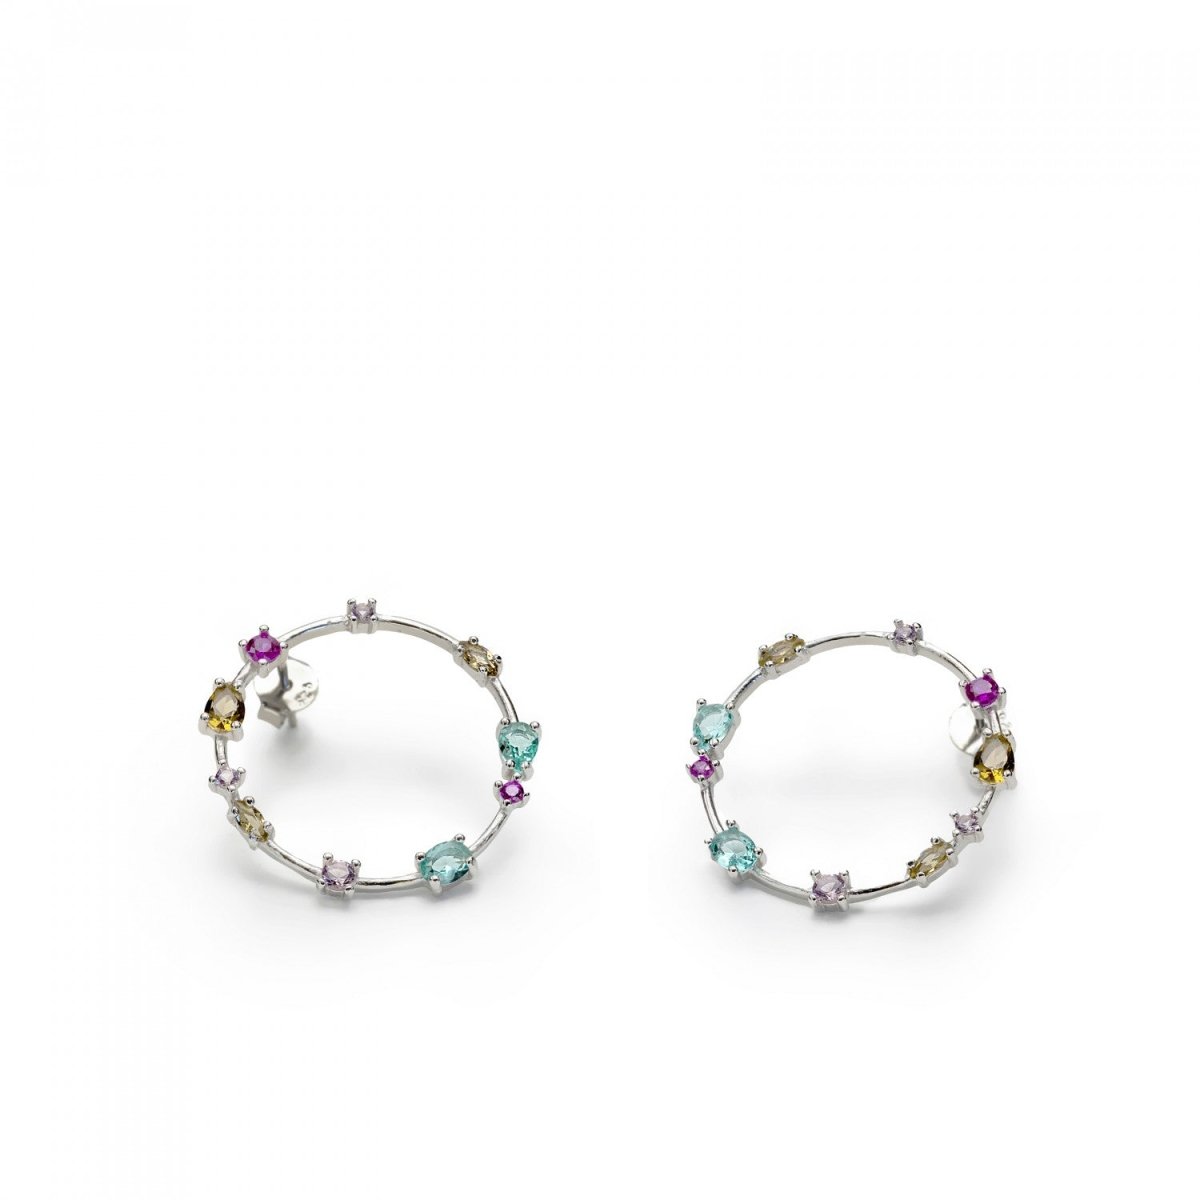 Earrings - Hoop earrings with adamantine quartz in bright tones